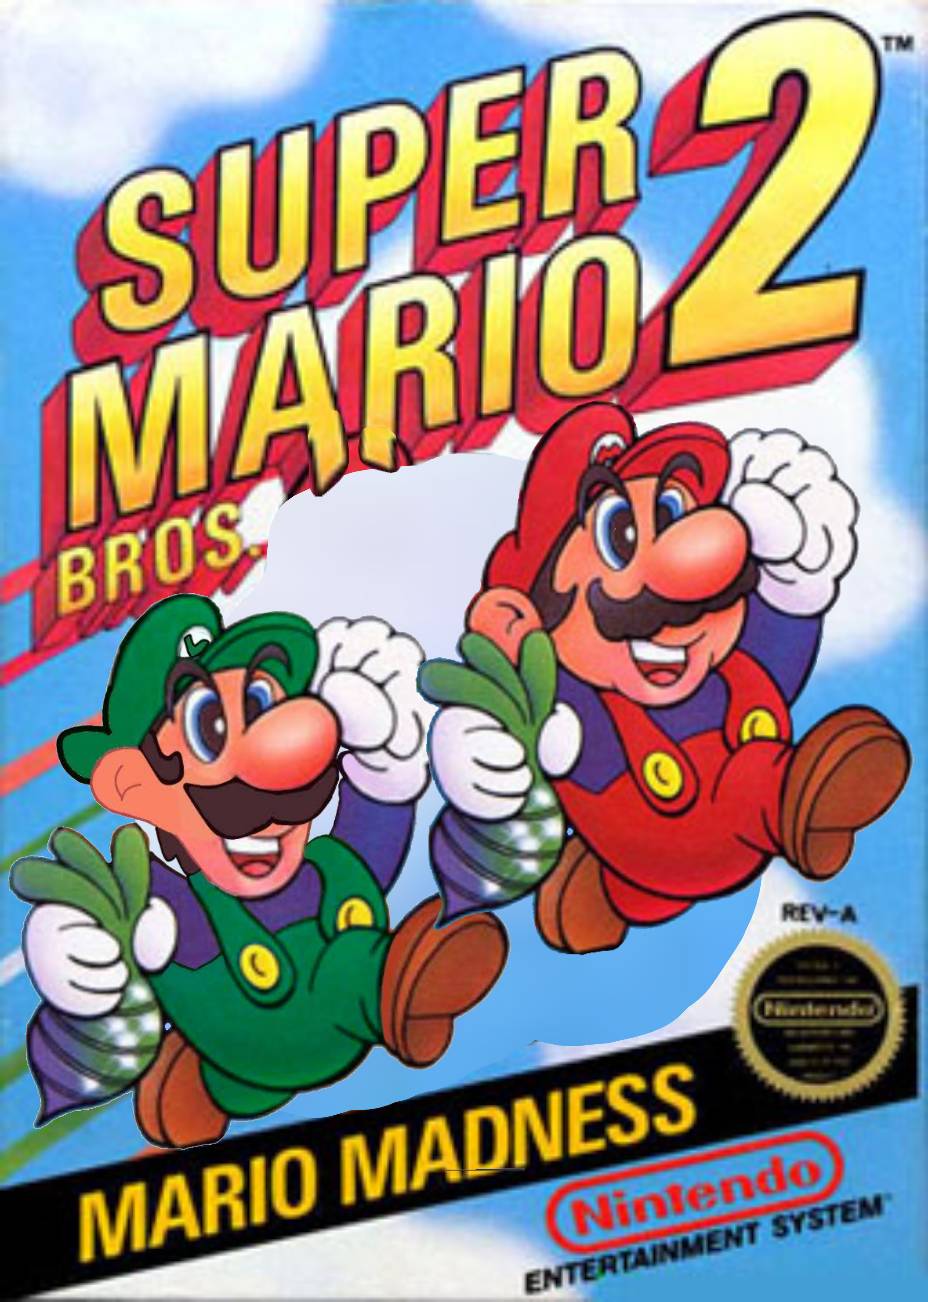 Super Mario Bros. 2 1988 by Nicholasblasi on DeviantArt